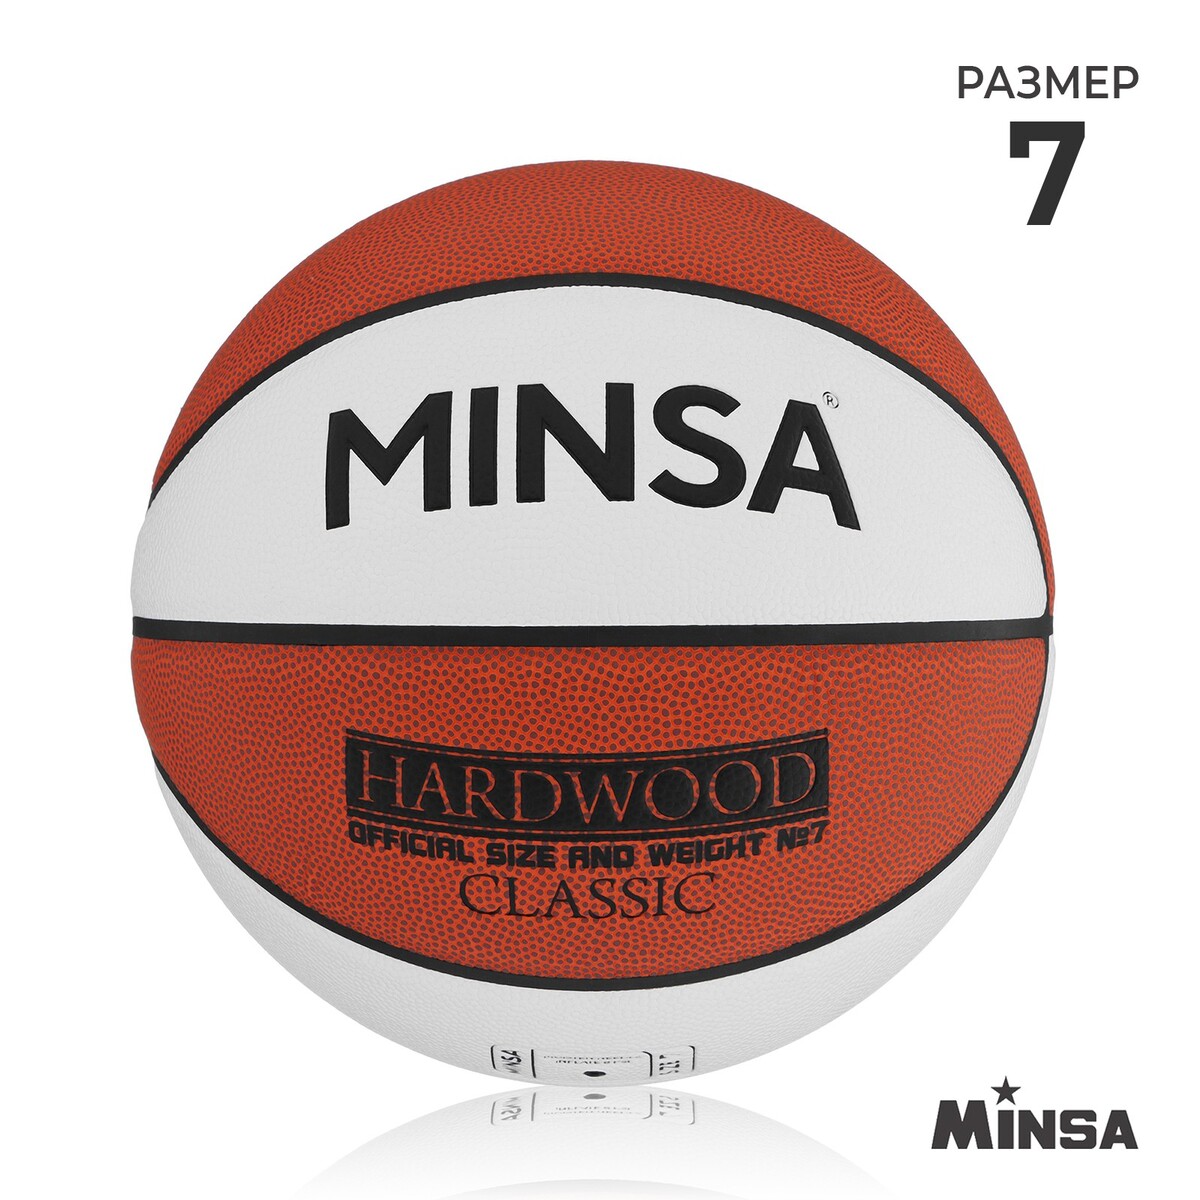 Баскетбольный мяч minsa hardwood classic, pu, клееный, 8 панелей, р. 7 баскетбольный мяч minsa тренировочный pu клееный 8 панелей р 6